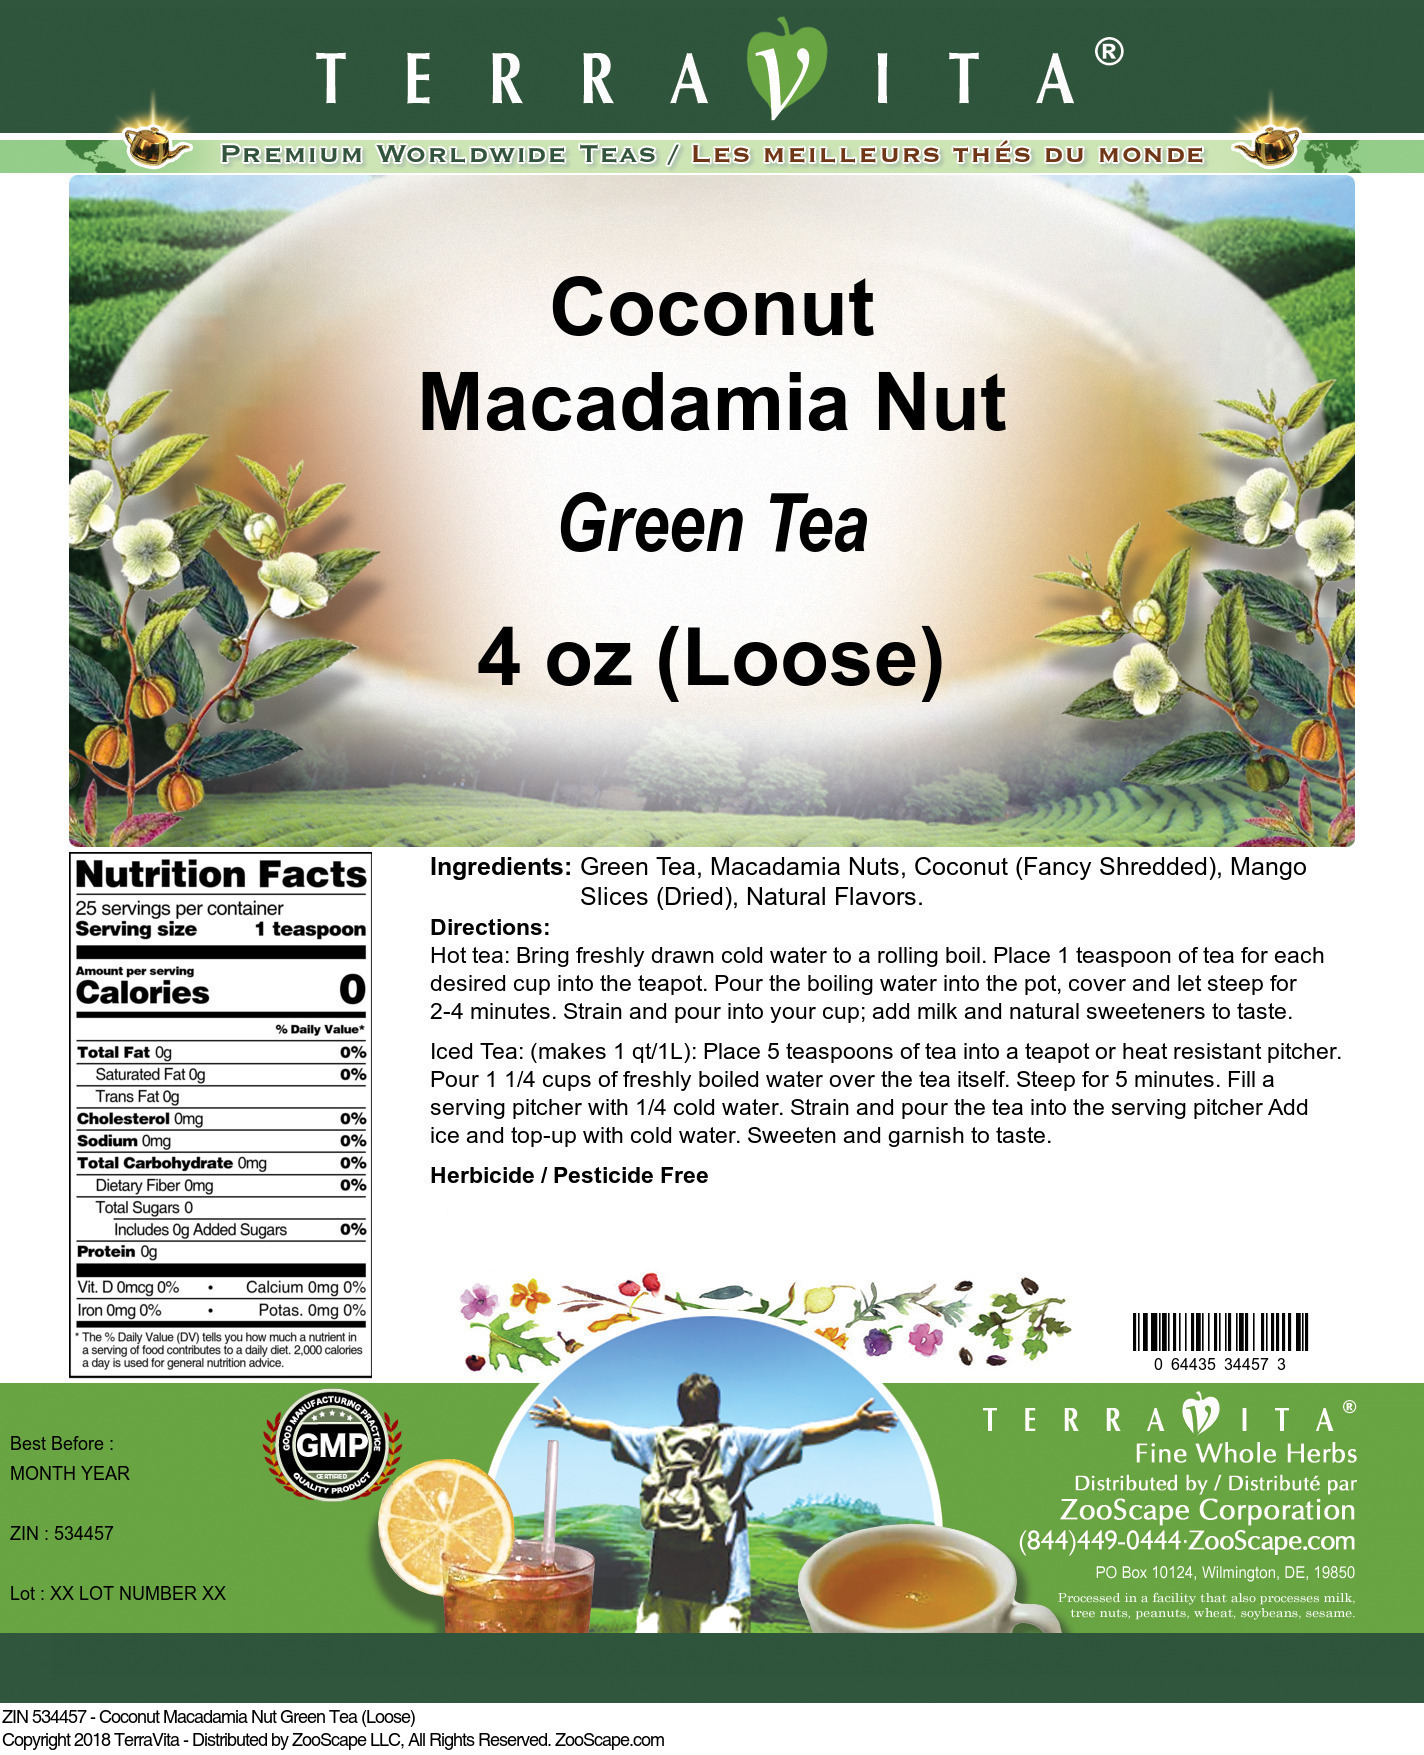 Coconut Macadamia Nut Green Tea (Loose) - Label